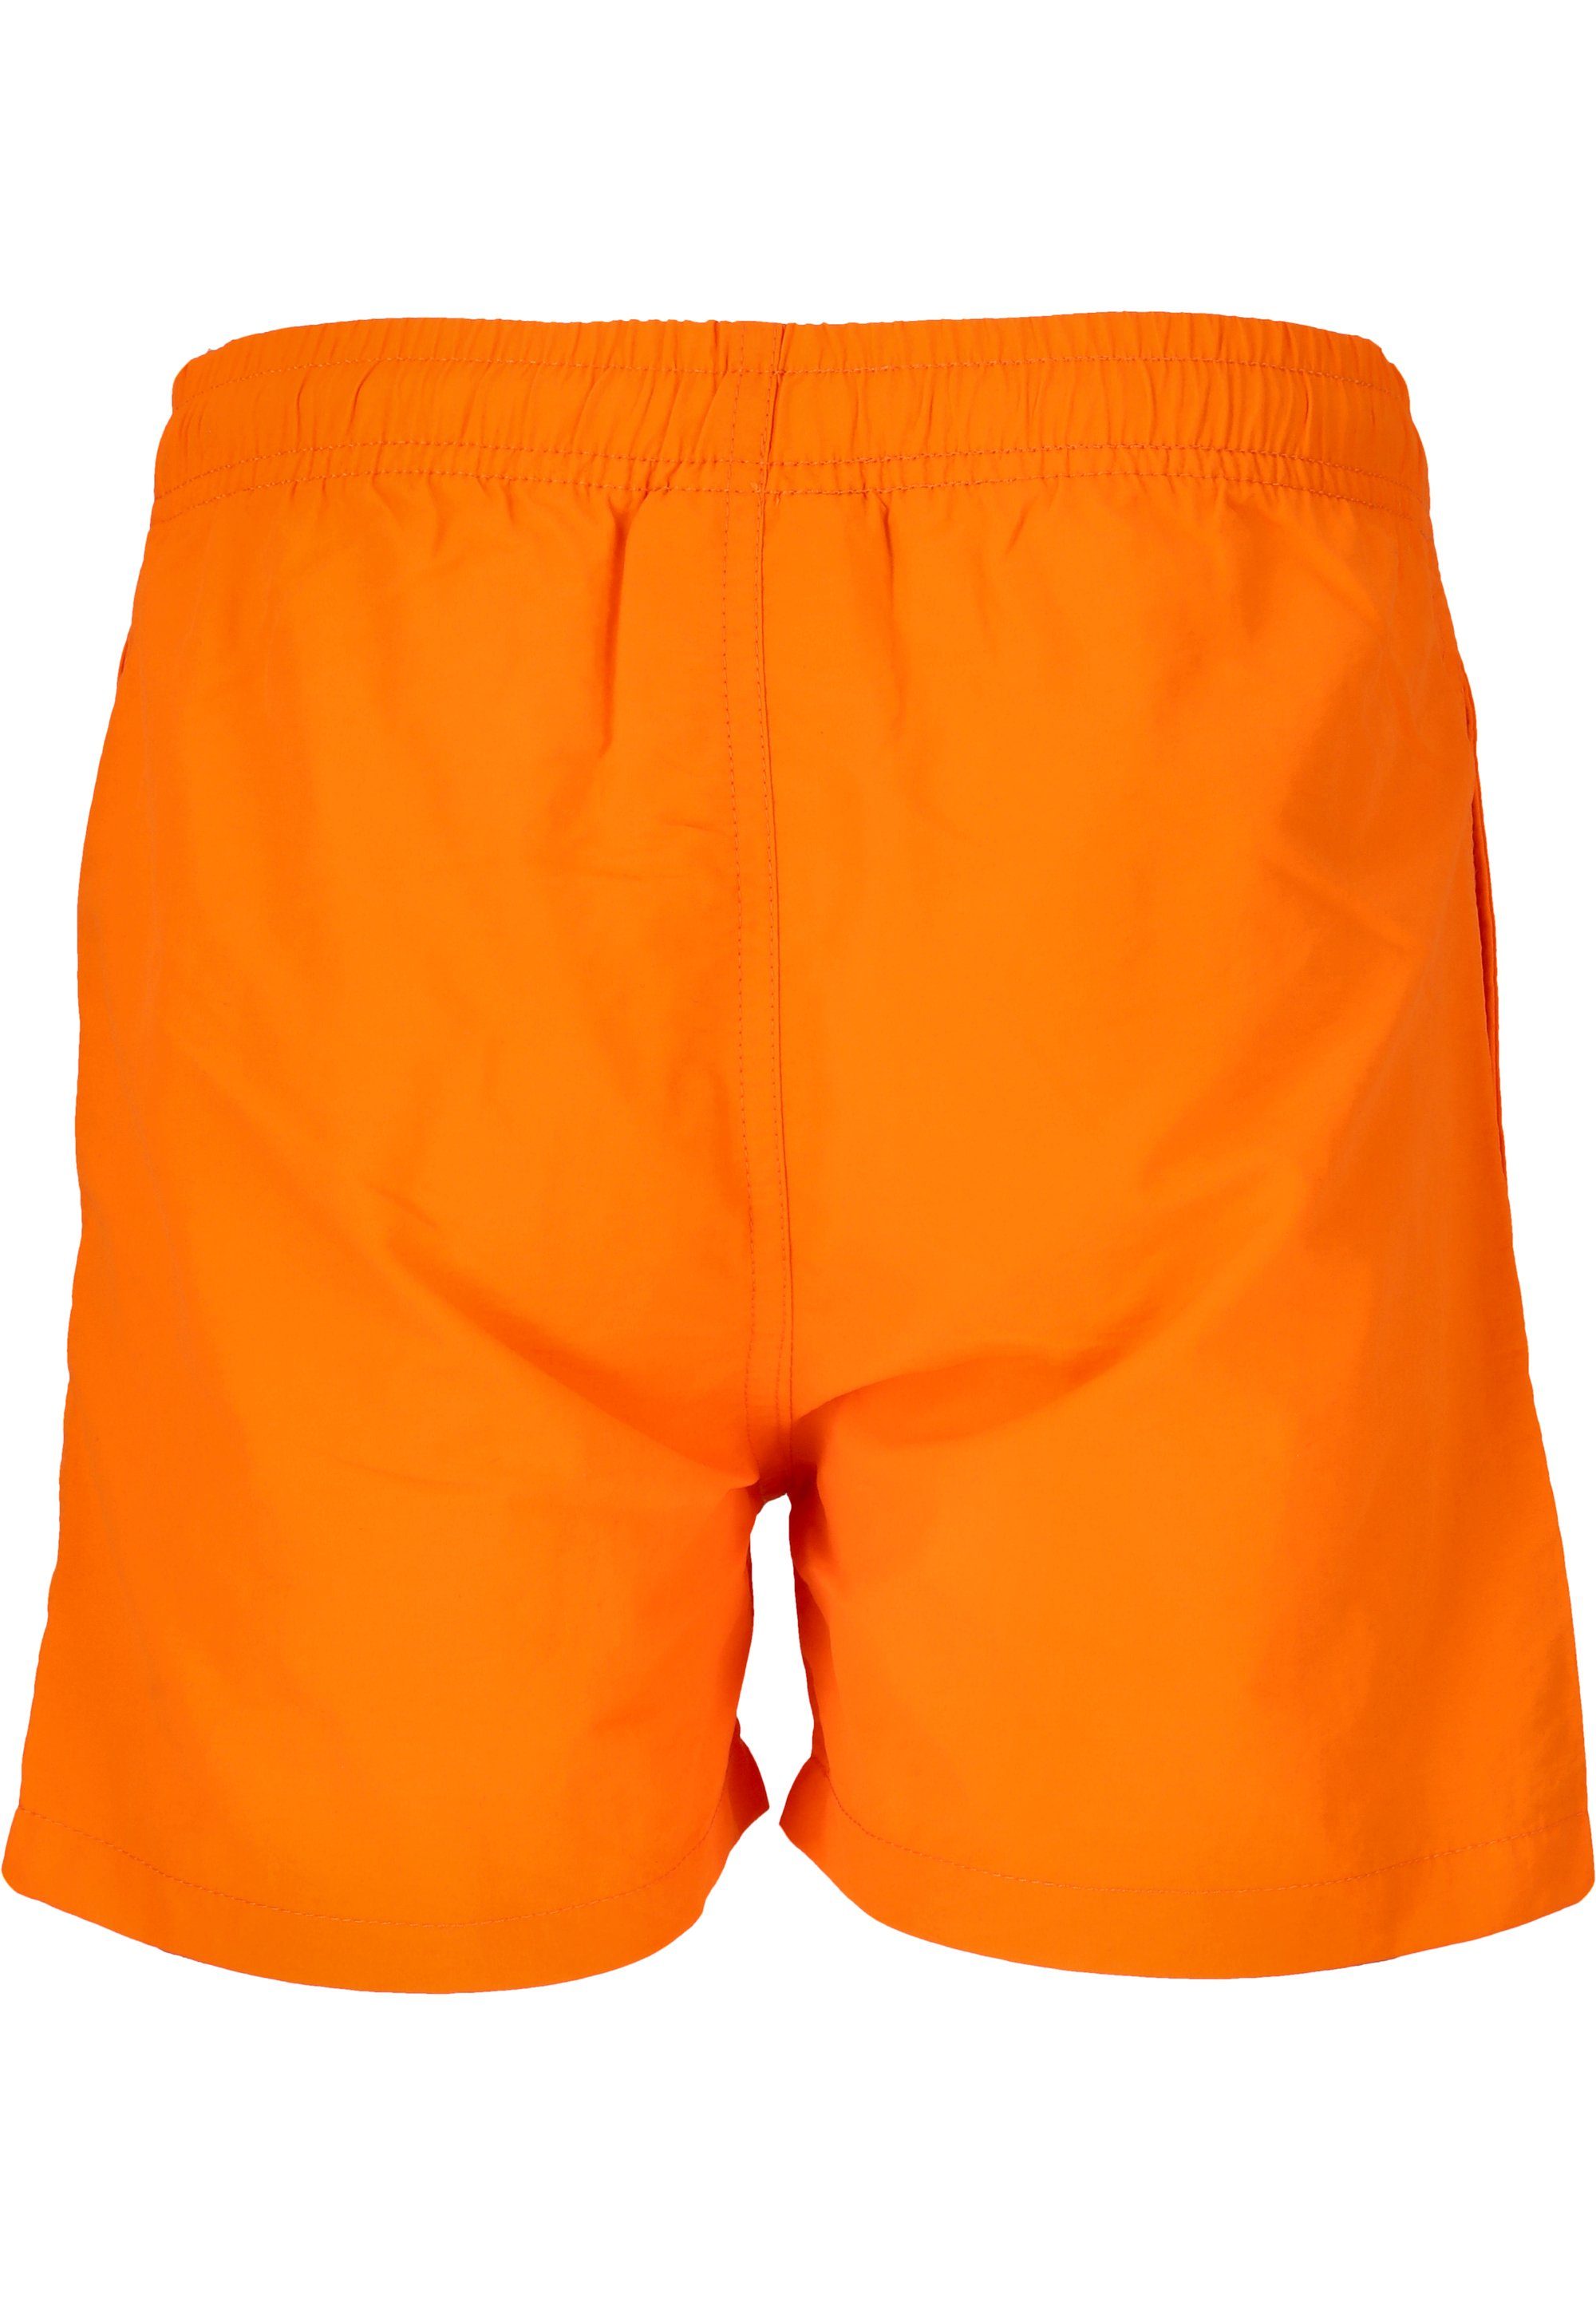 CRUZ praktischem mit Kordelzug Shorts Eyemouth orange